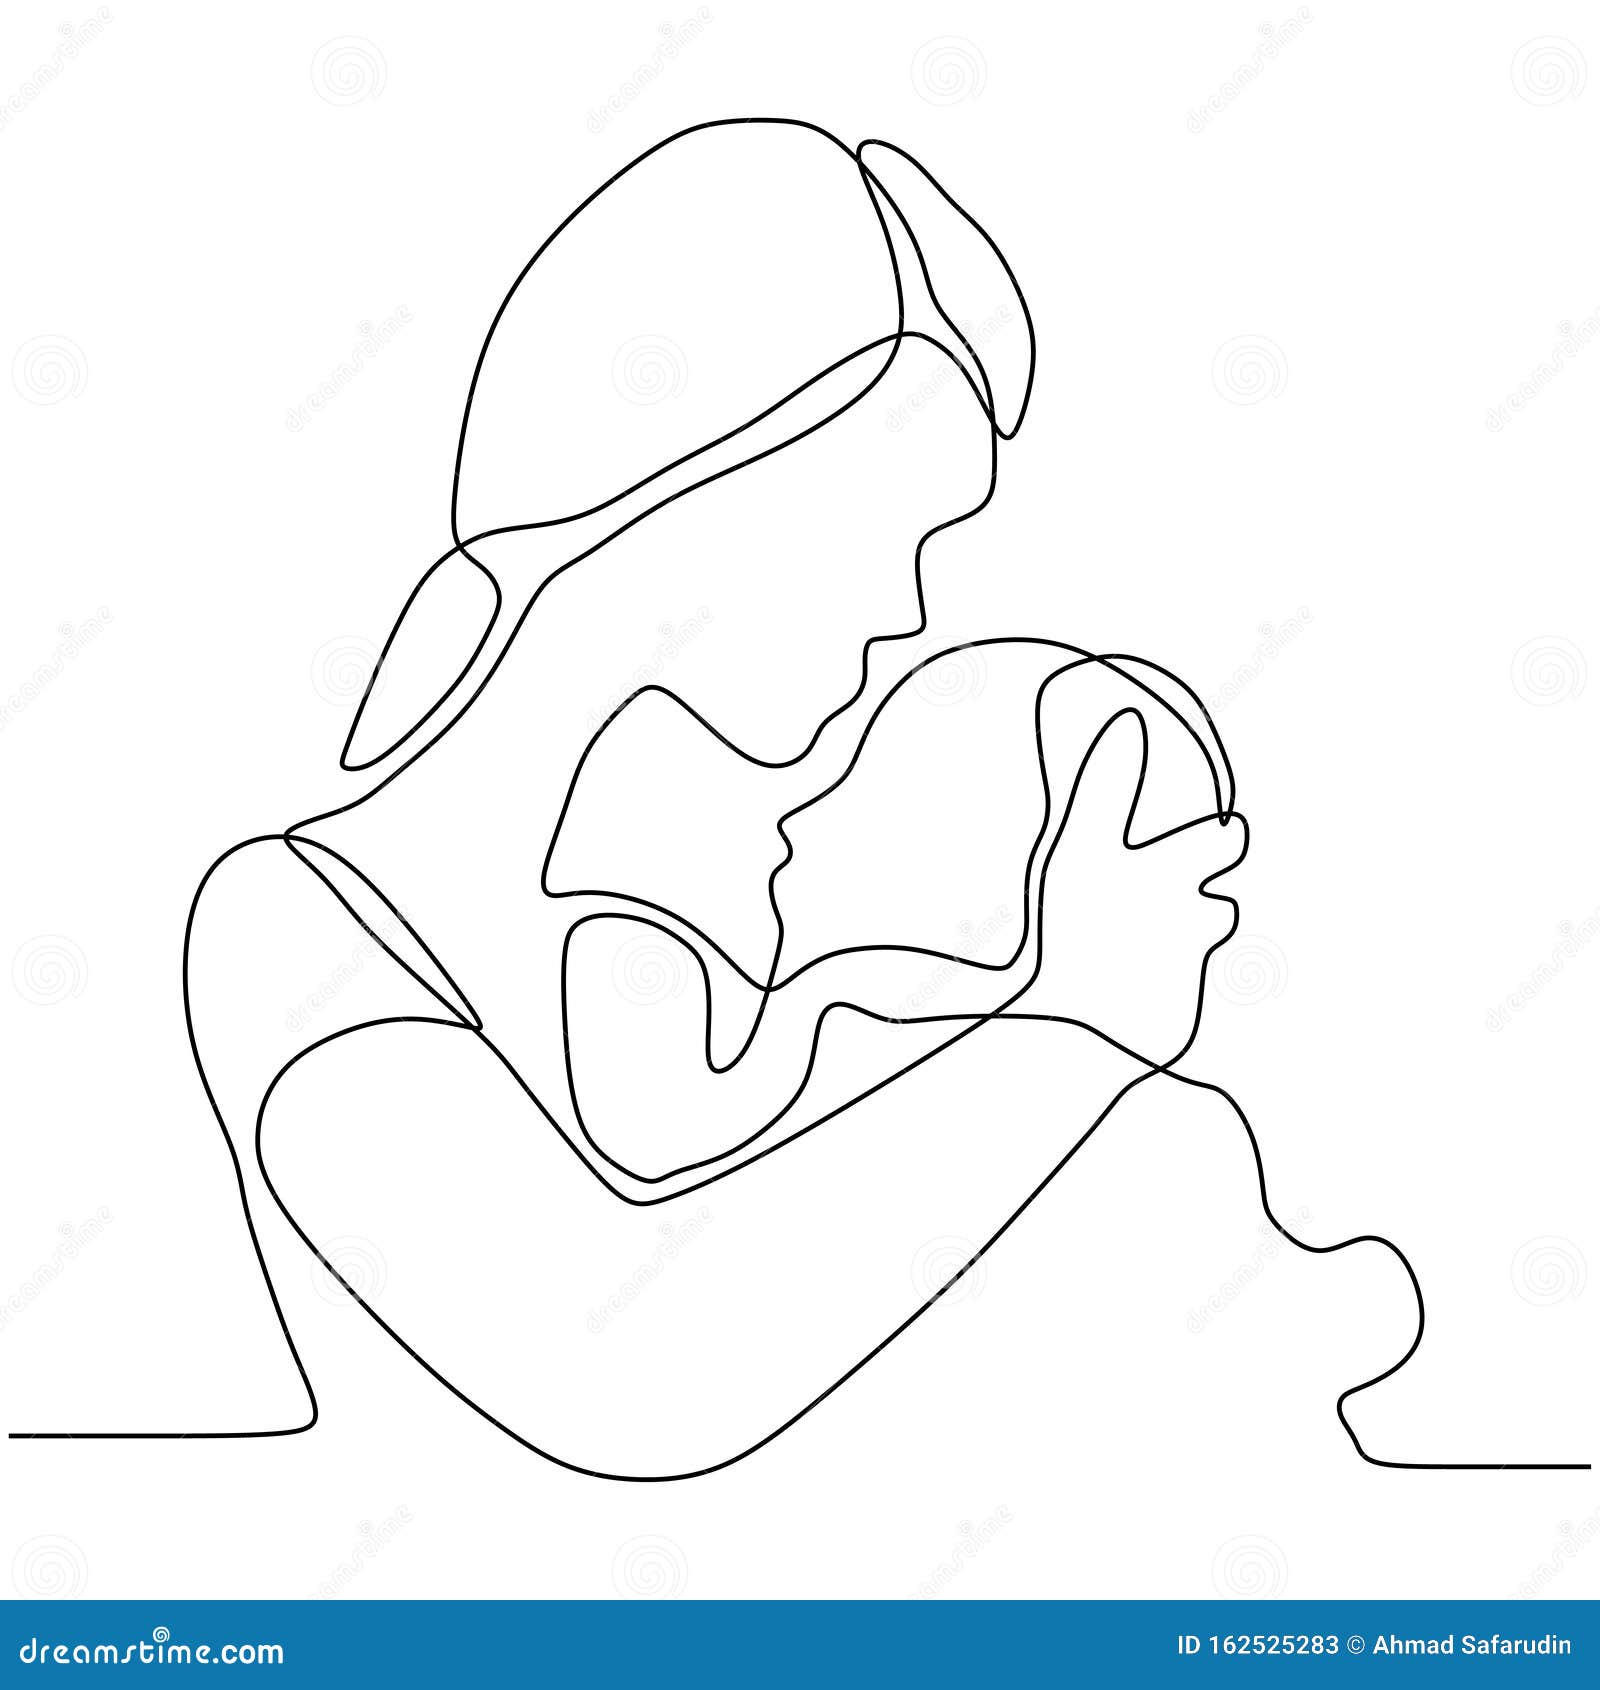 Conjunto conjunto arte linha desenho simples maternidade casal pose amor  pai e mãe desenhado à mão